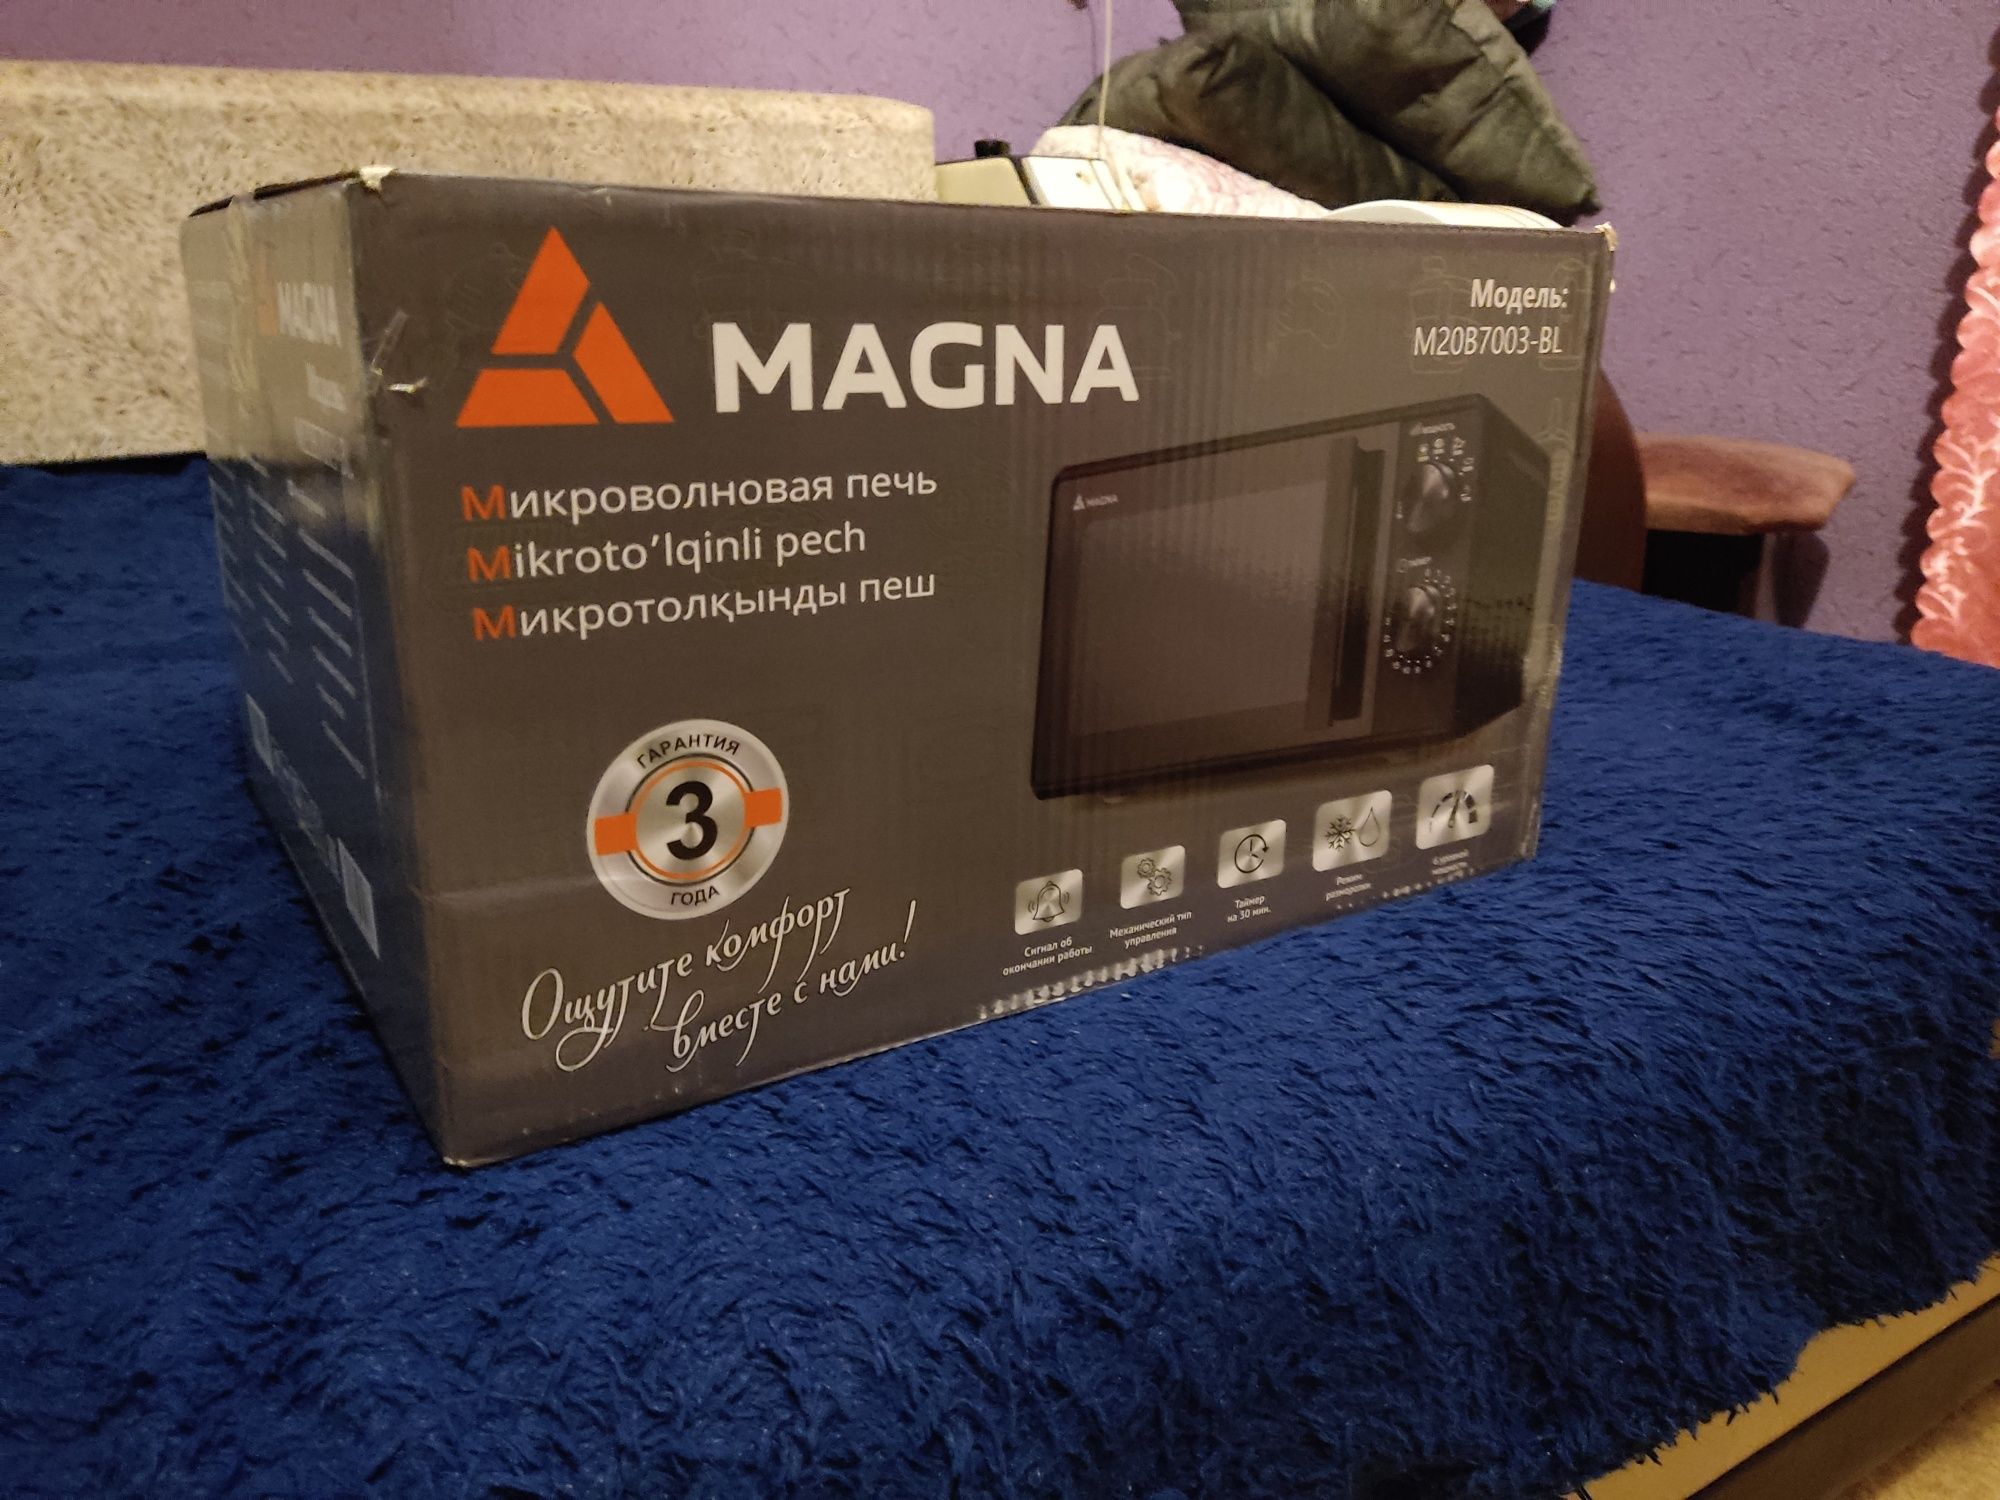 Продаю новую микроволновку Magna